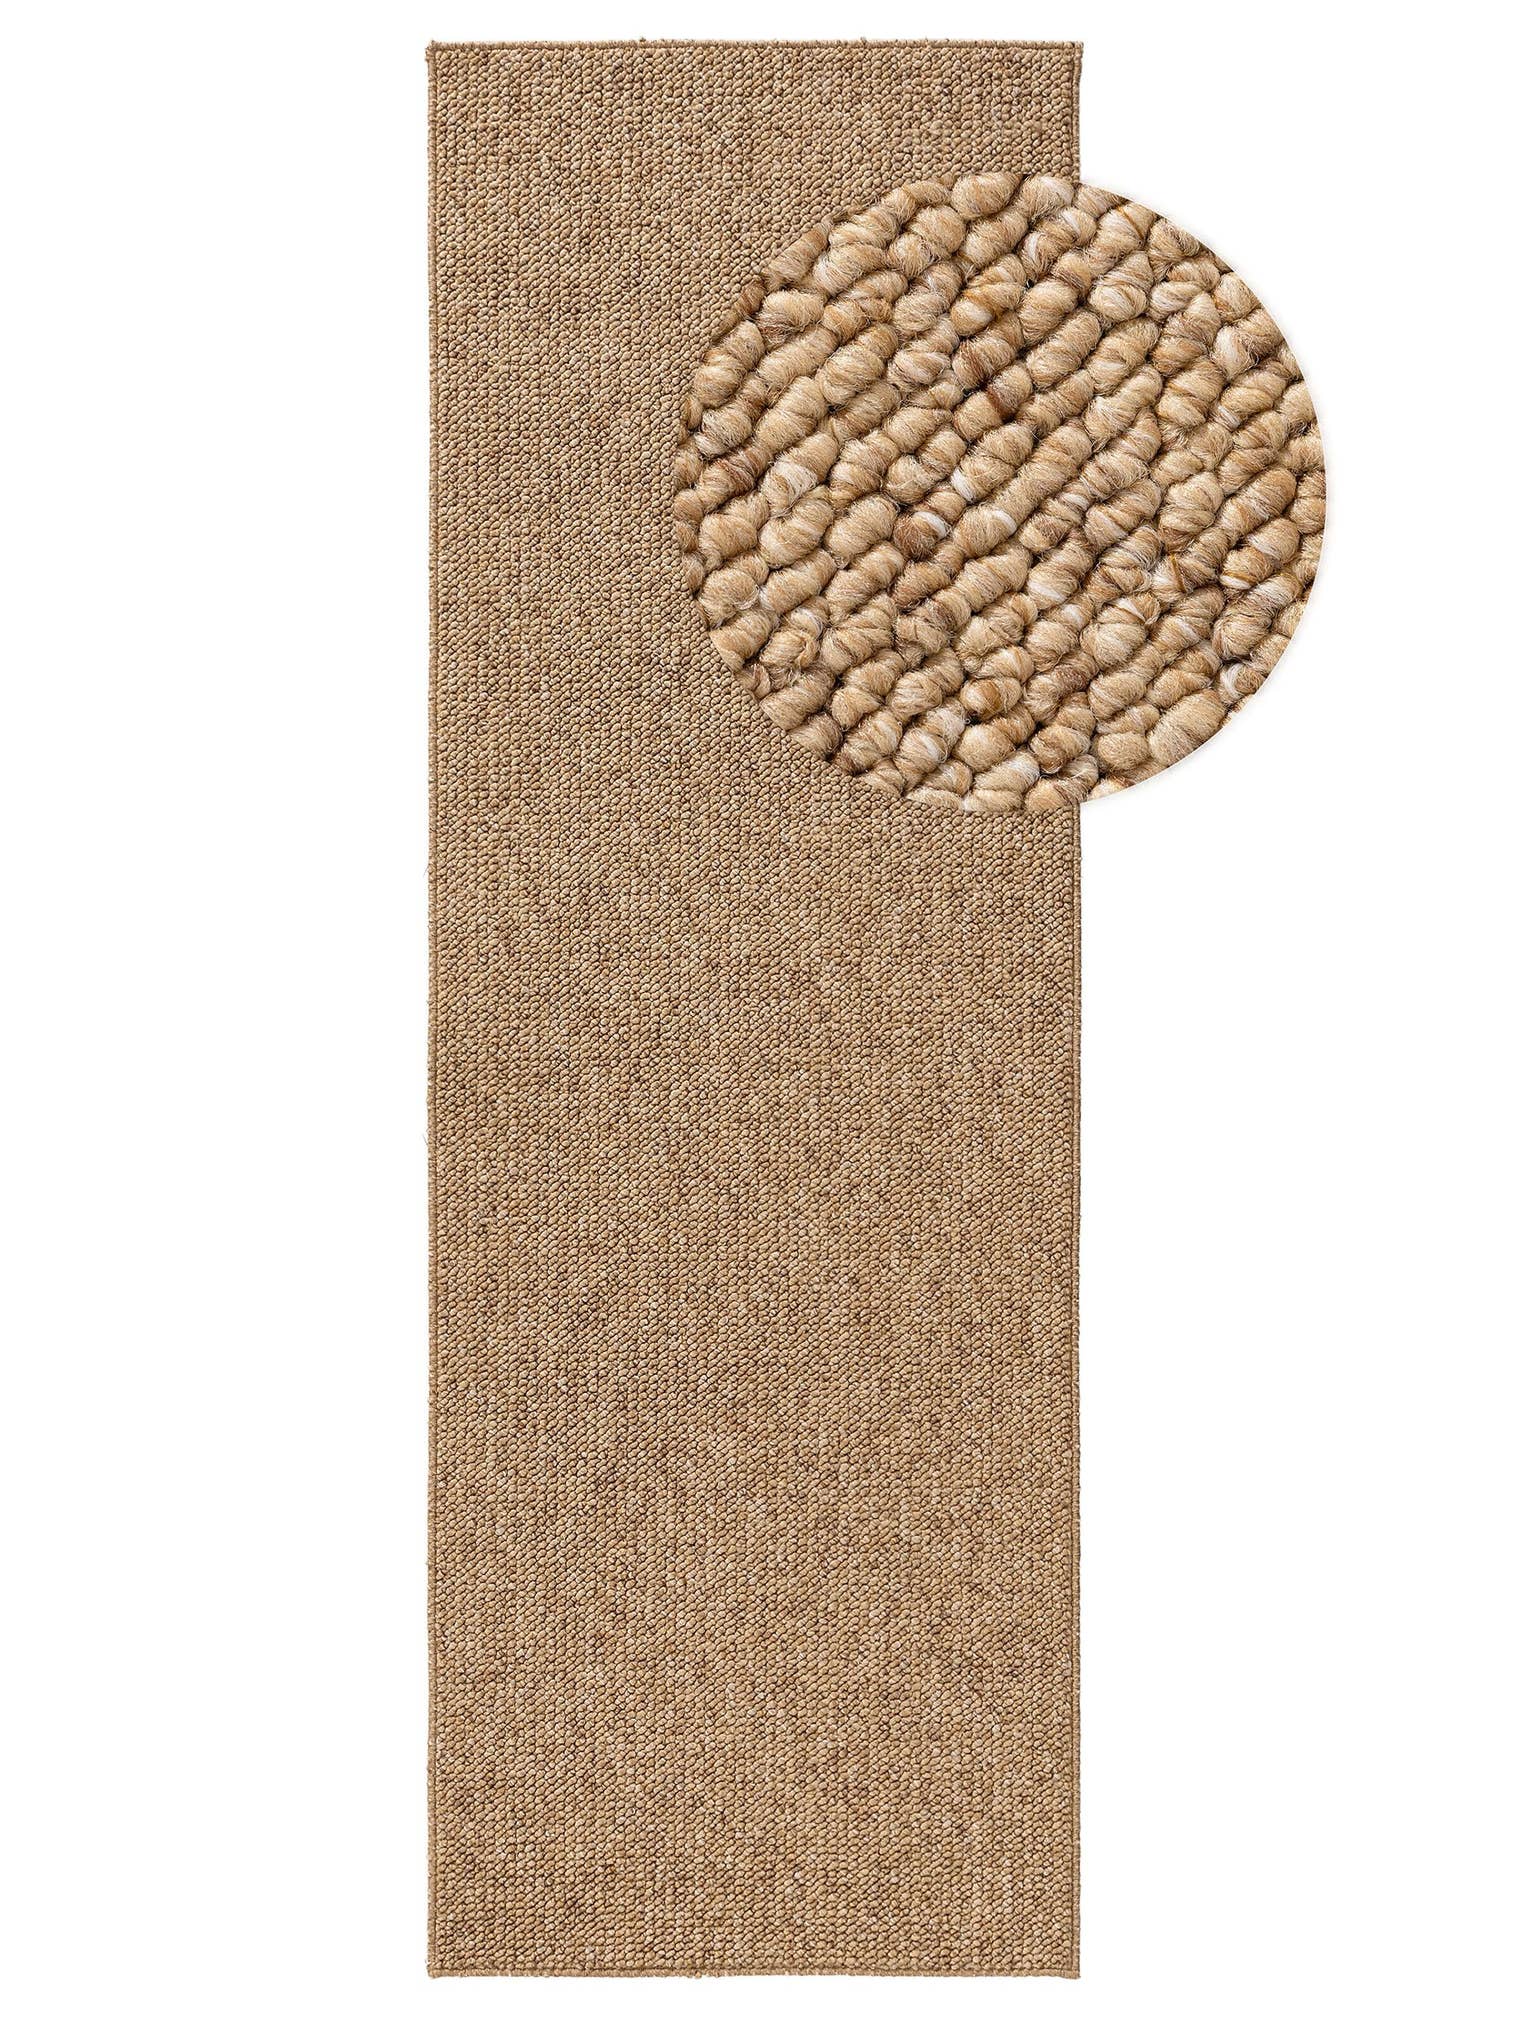 Teppich aus 100% Polypropylen in Braun mit 6 bis 10 mm hohem Flor von benuta Nest